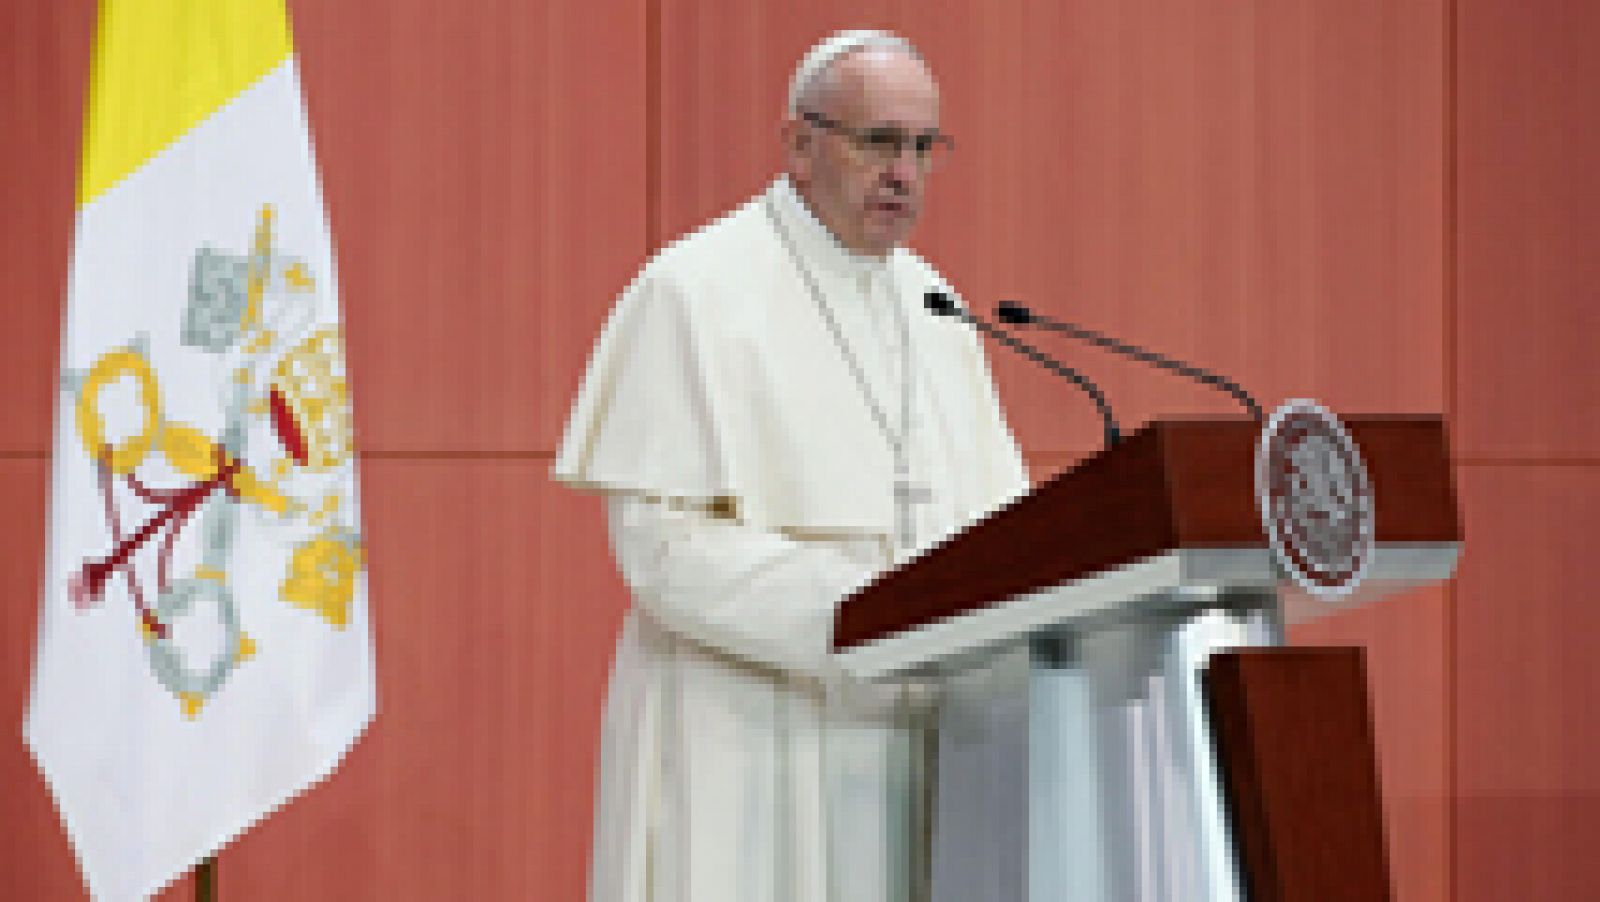 El papa Francisco, que por primera vez se encuentra de visita en México, ha pronunciado allí un discurso marcado por la denuncia de los privilegios y los problemas de la corrupción, el narcotráfico y la violencia.